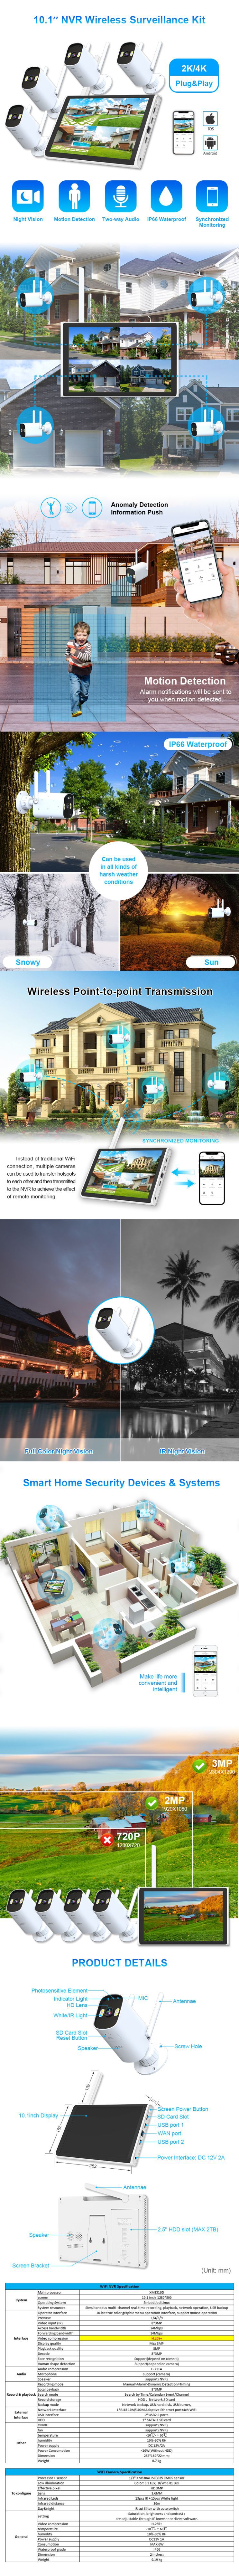 Best Smart Home Cctv Camera System KT-01